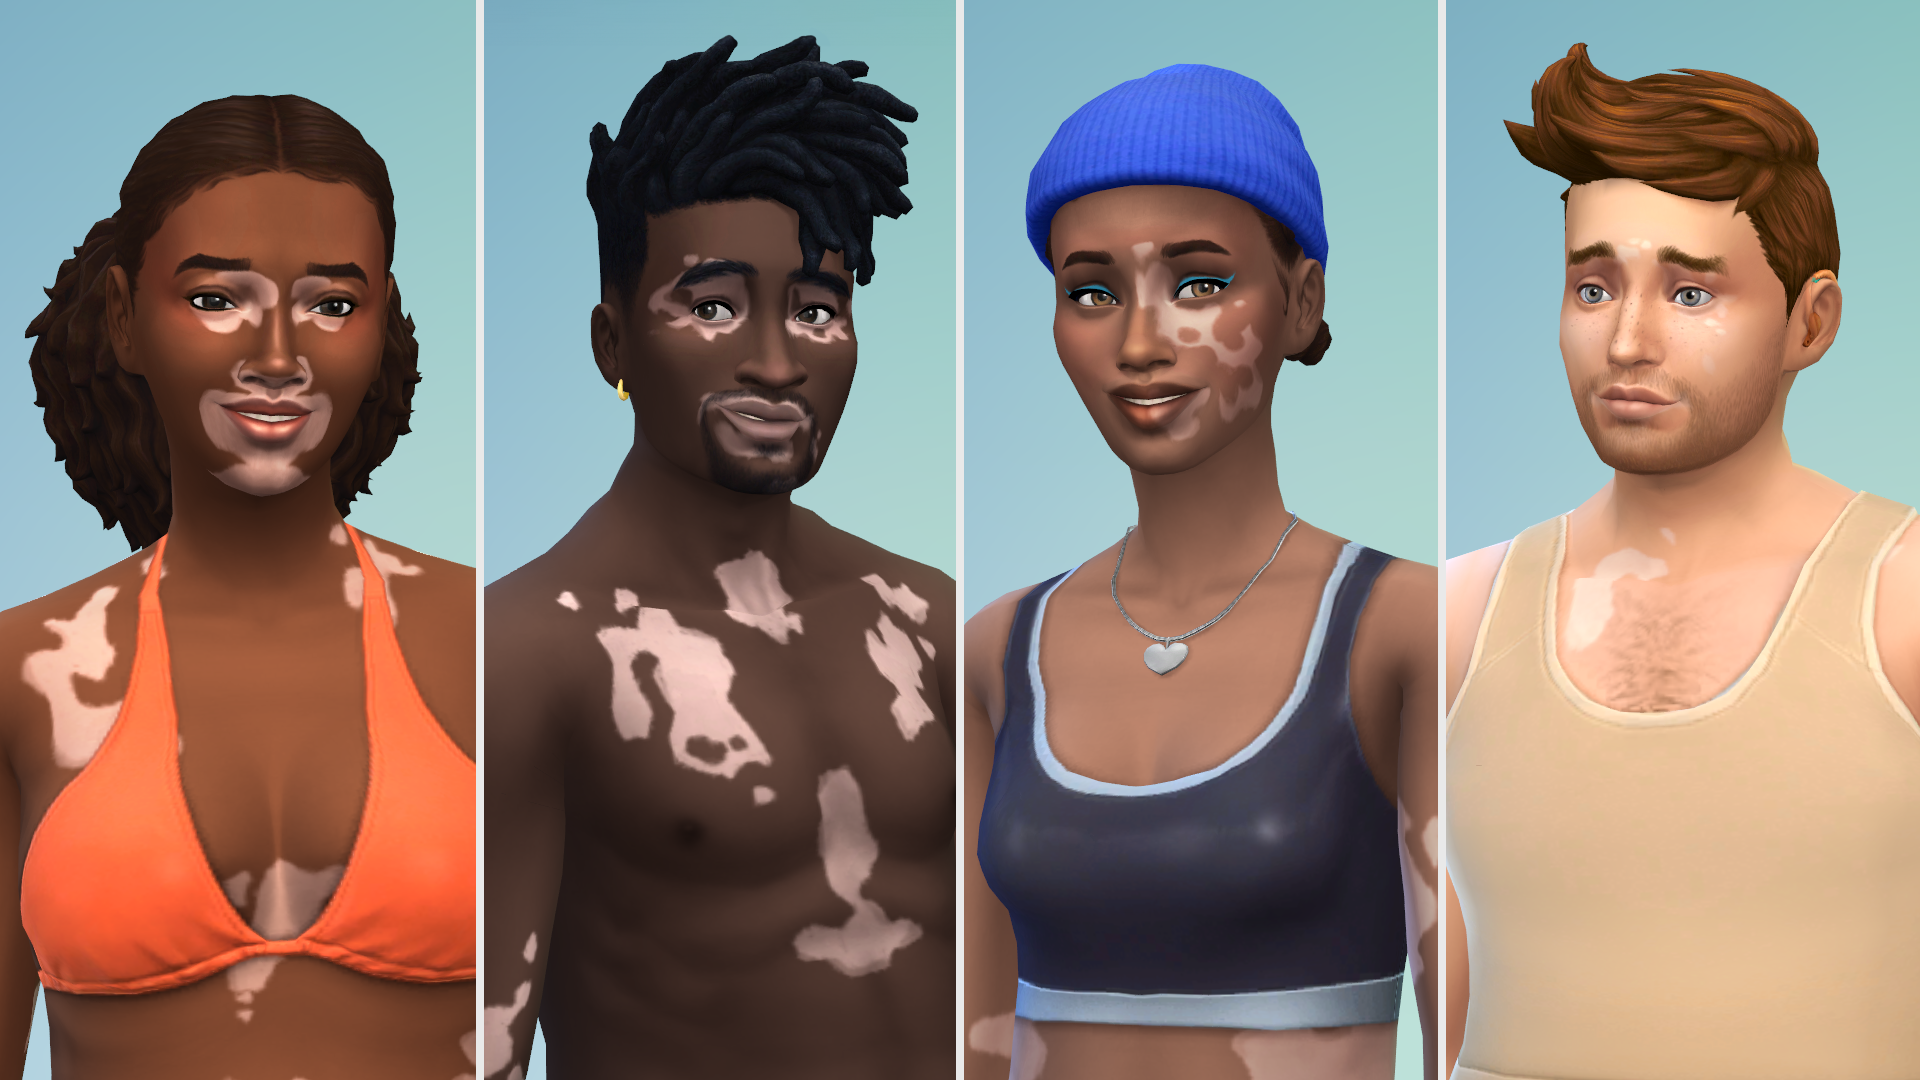 A composite of four Sims with vitiligo.